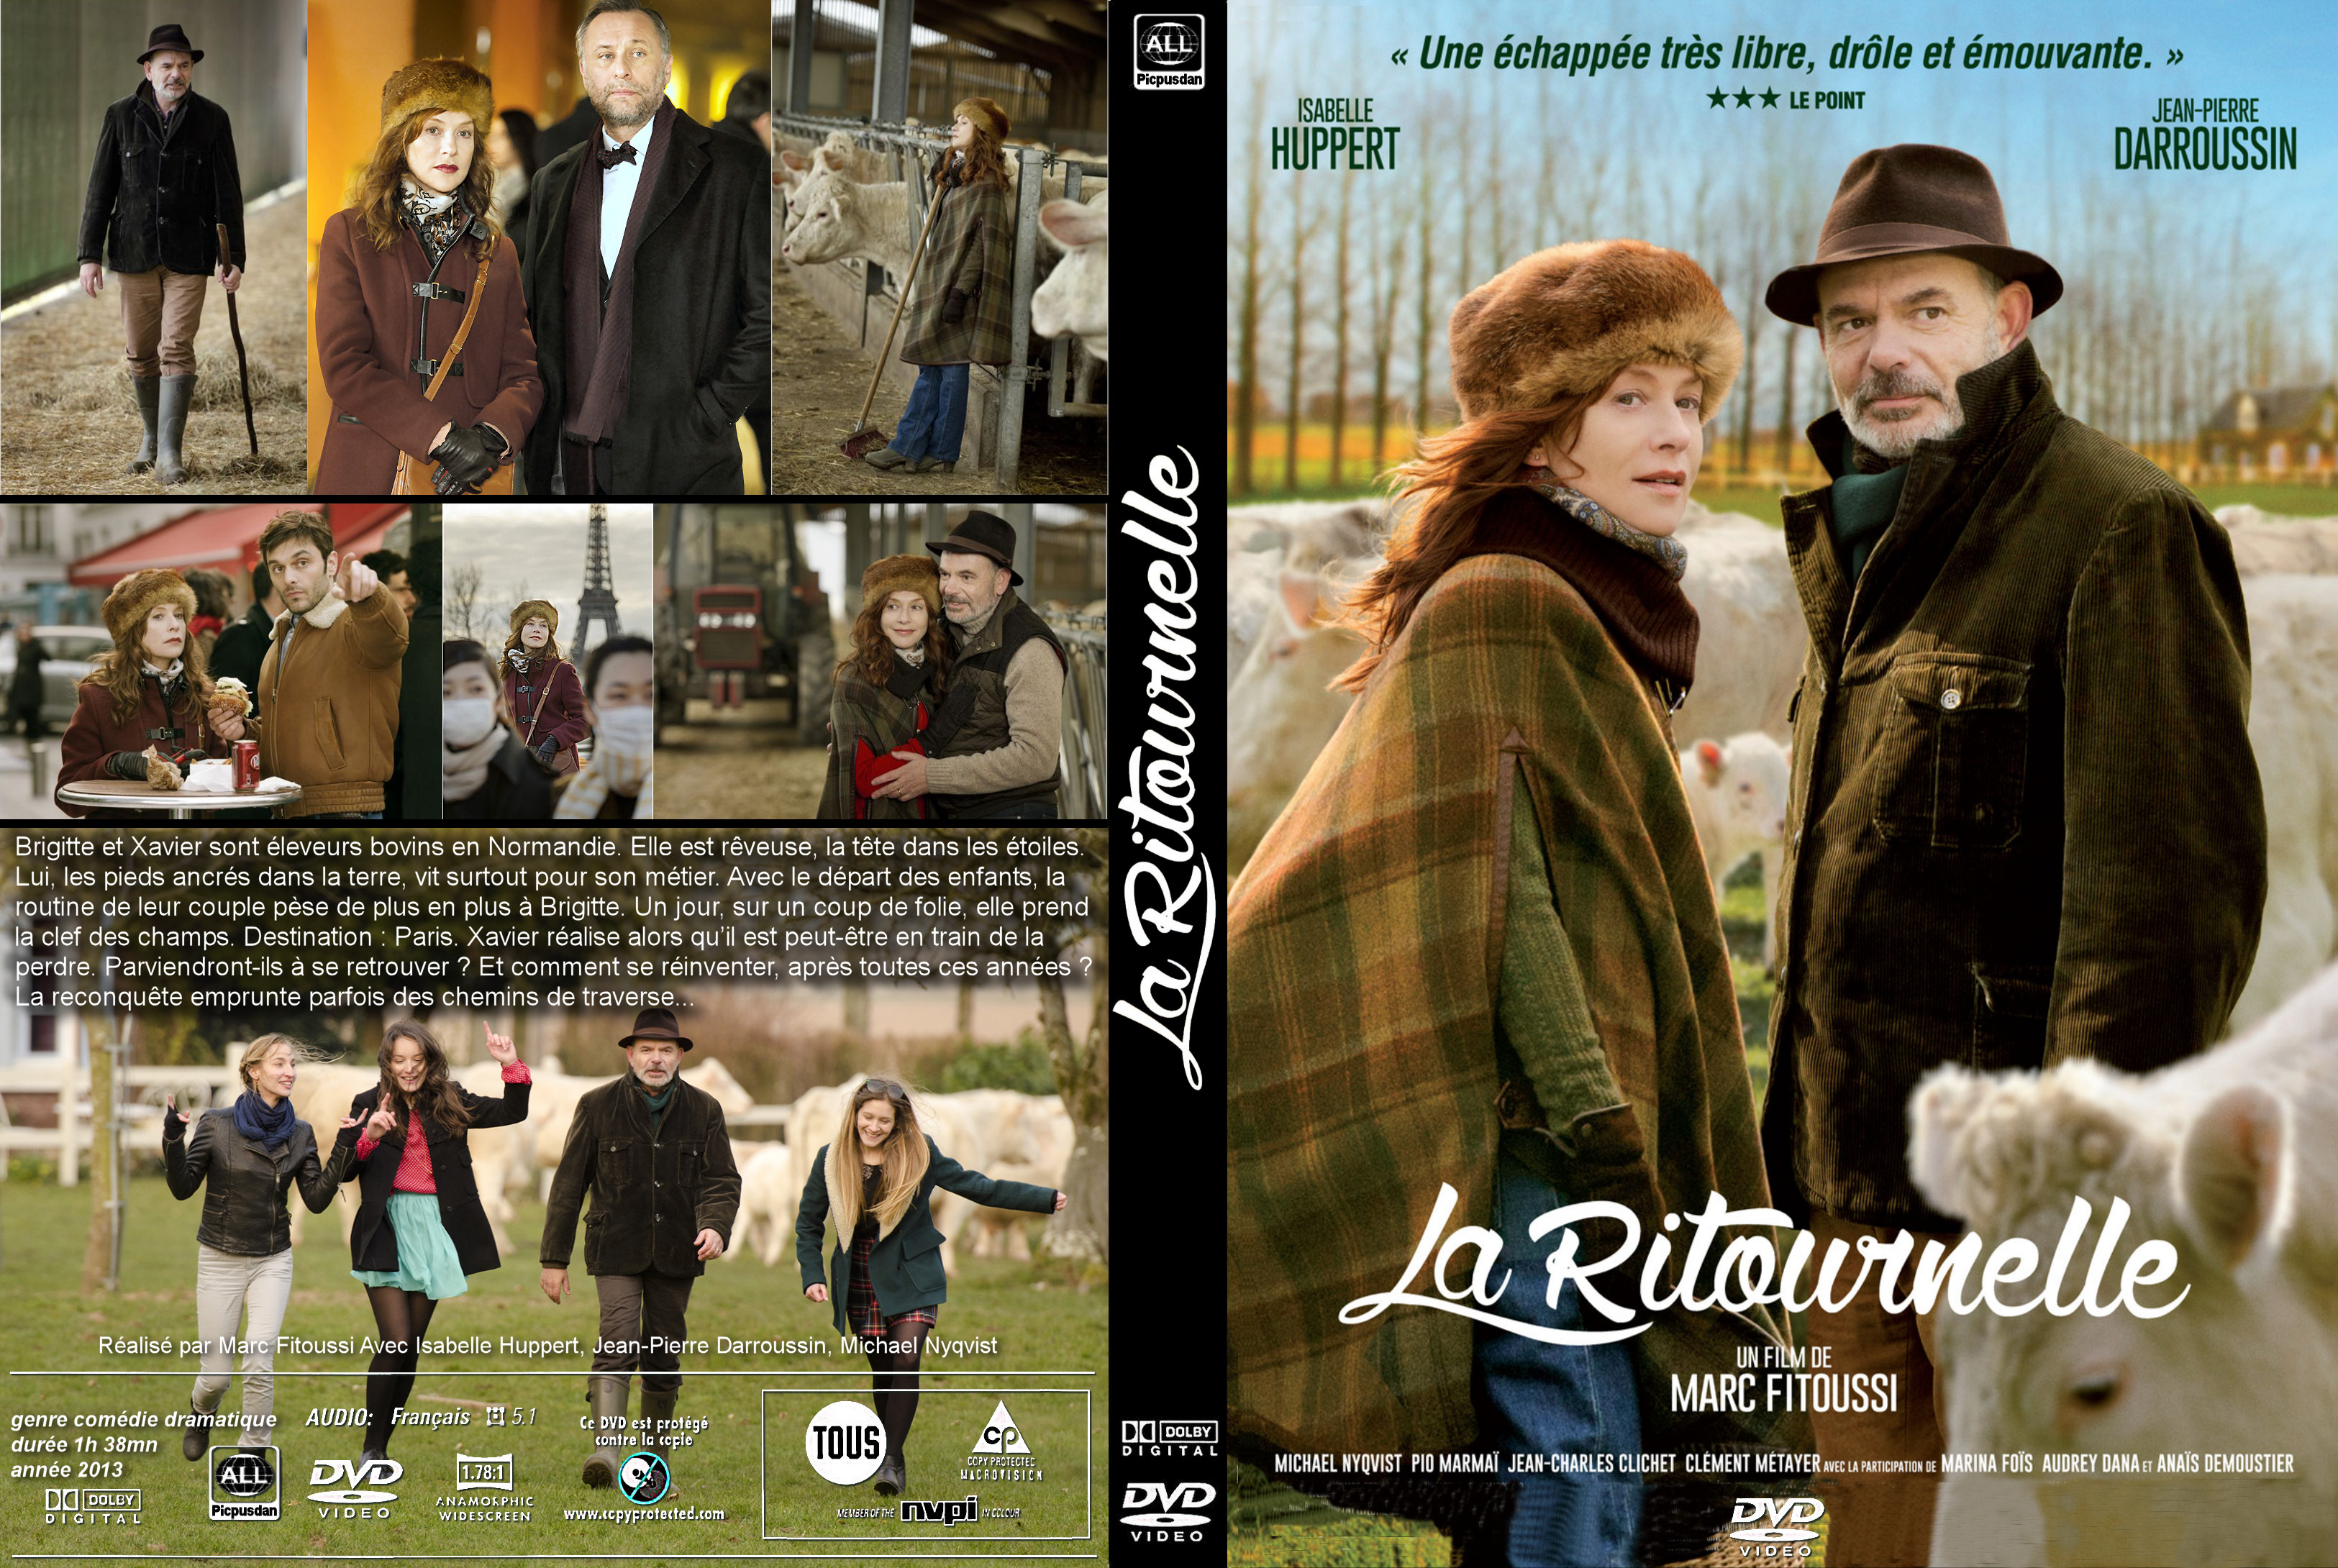 Jaquette DVD La Ritournelle custom v2